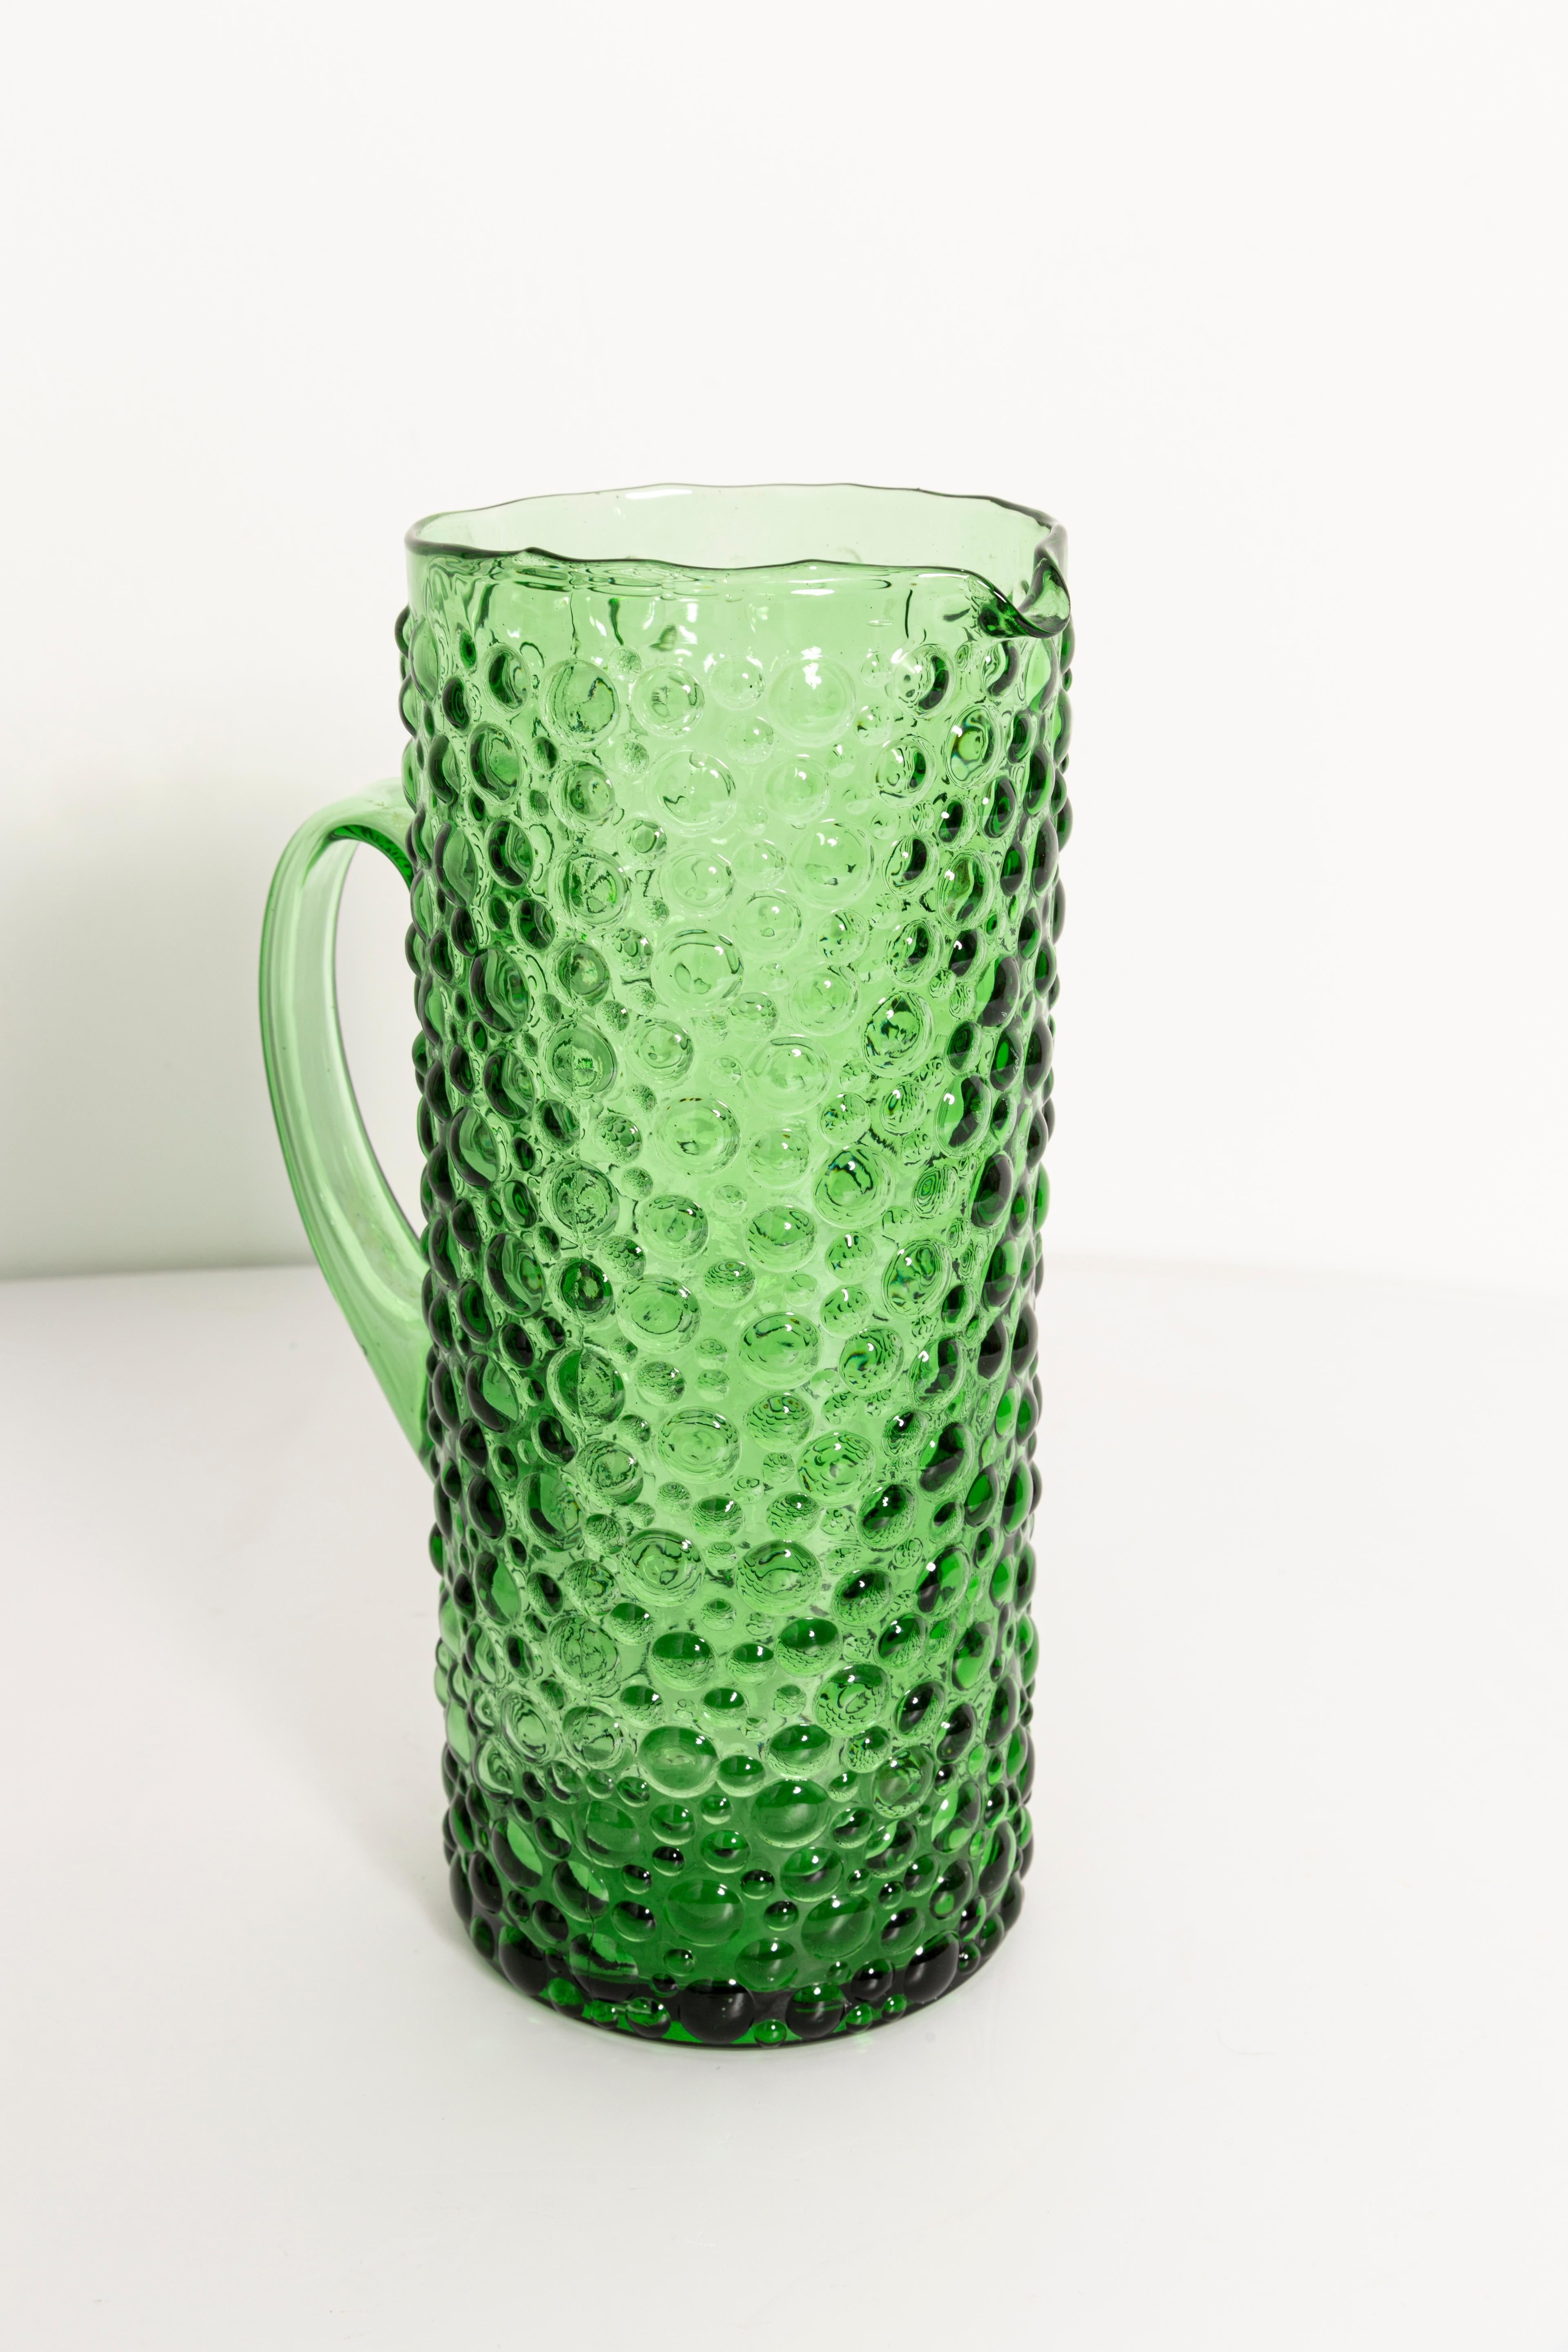 Eine atemberaubende dunkelgrüne Glasvase mit geometrischem Blasenmuster, hergestellt von einer der vielen Glasmanufakturen in der Region von Empoli, Italien. Das wäre eine großartige Ergänzung für jede Sammlung! Hervorragender Zustand, keine Chips